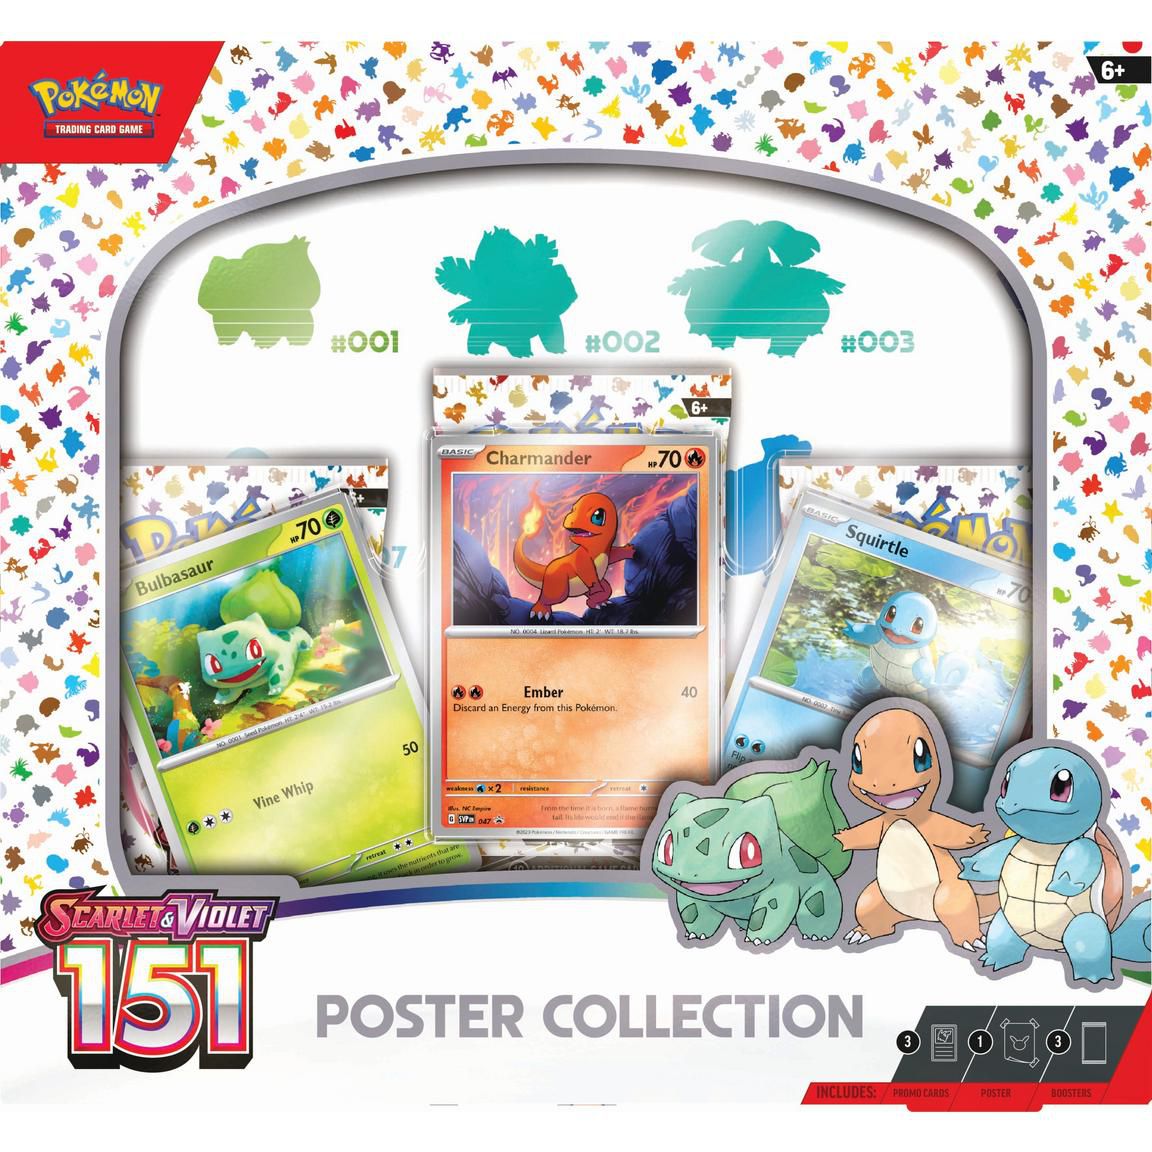 Une boîte de la collection d'affiches de Pokémon Scarlet et Violet : 151 Collection TCG, comprenant trois cartes de Bulbasaur, Charmander et Squirtle.